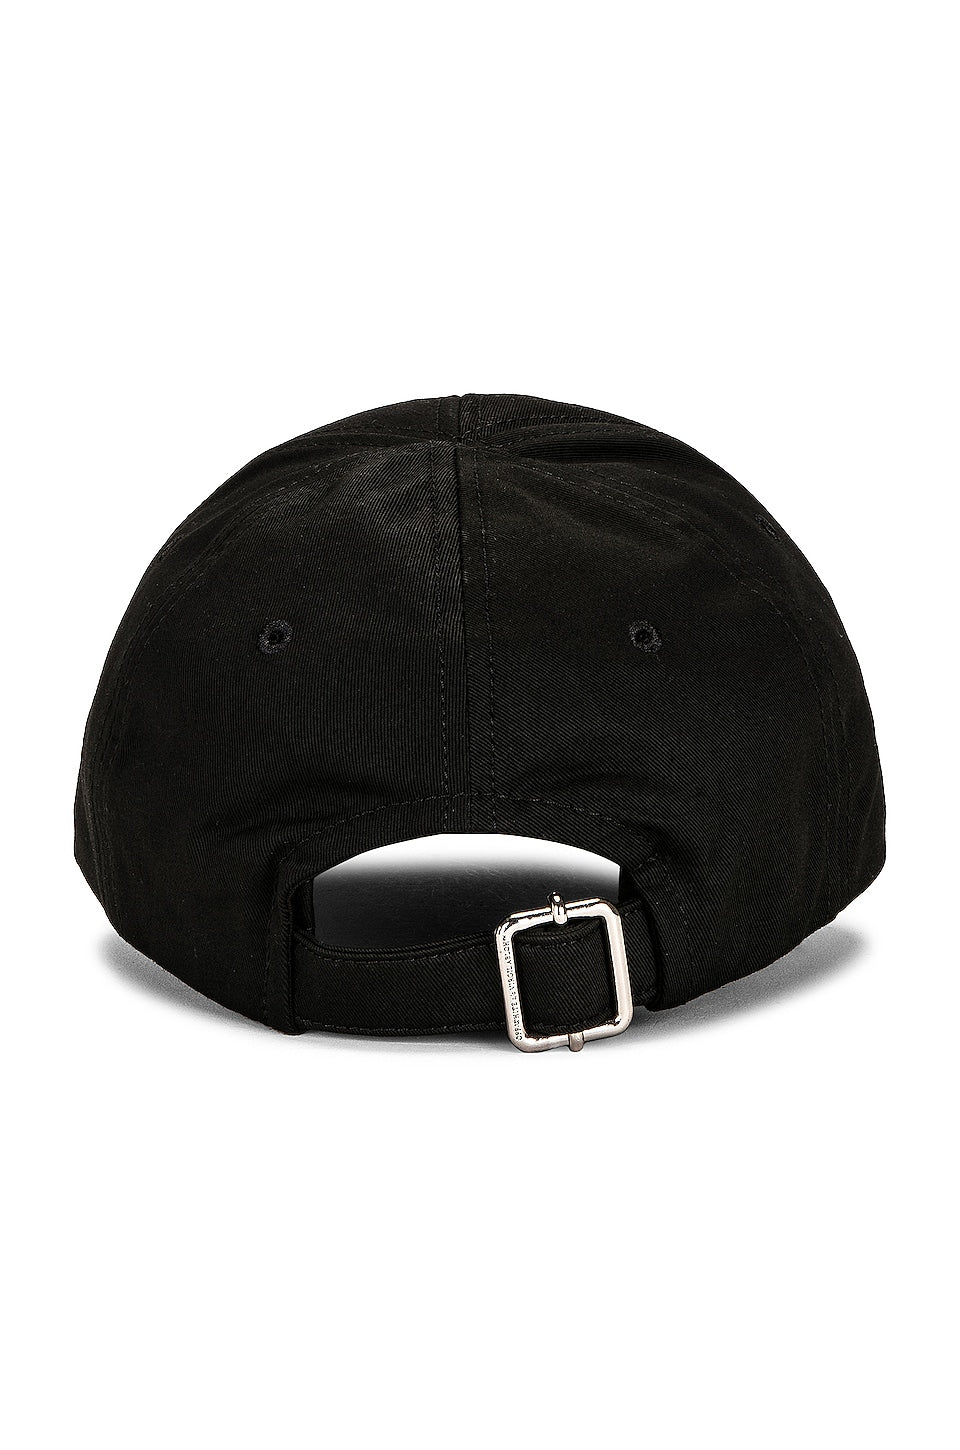 Off-White FF Blur Baseball Cap - Black - Escape Menswear